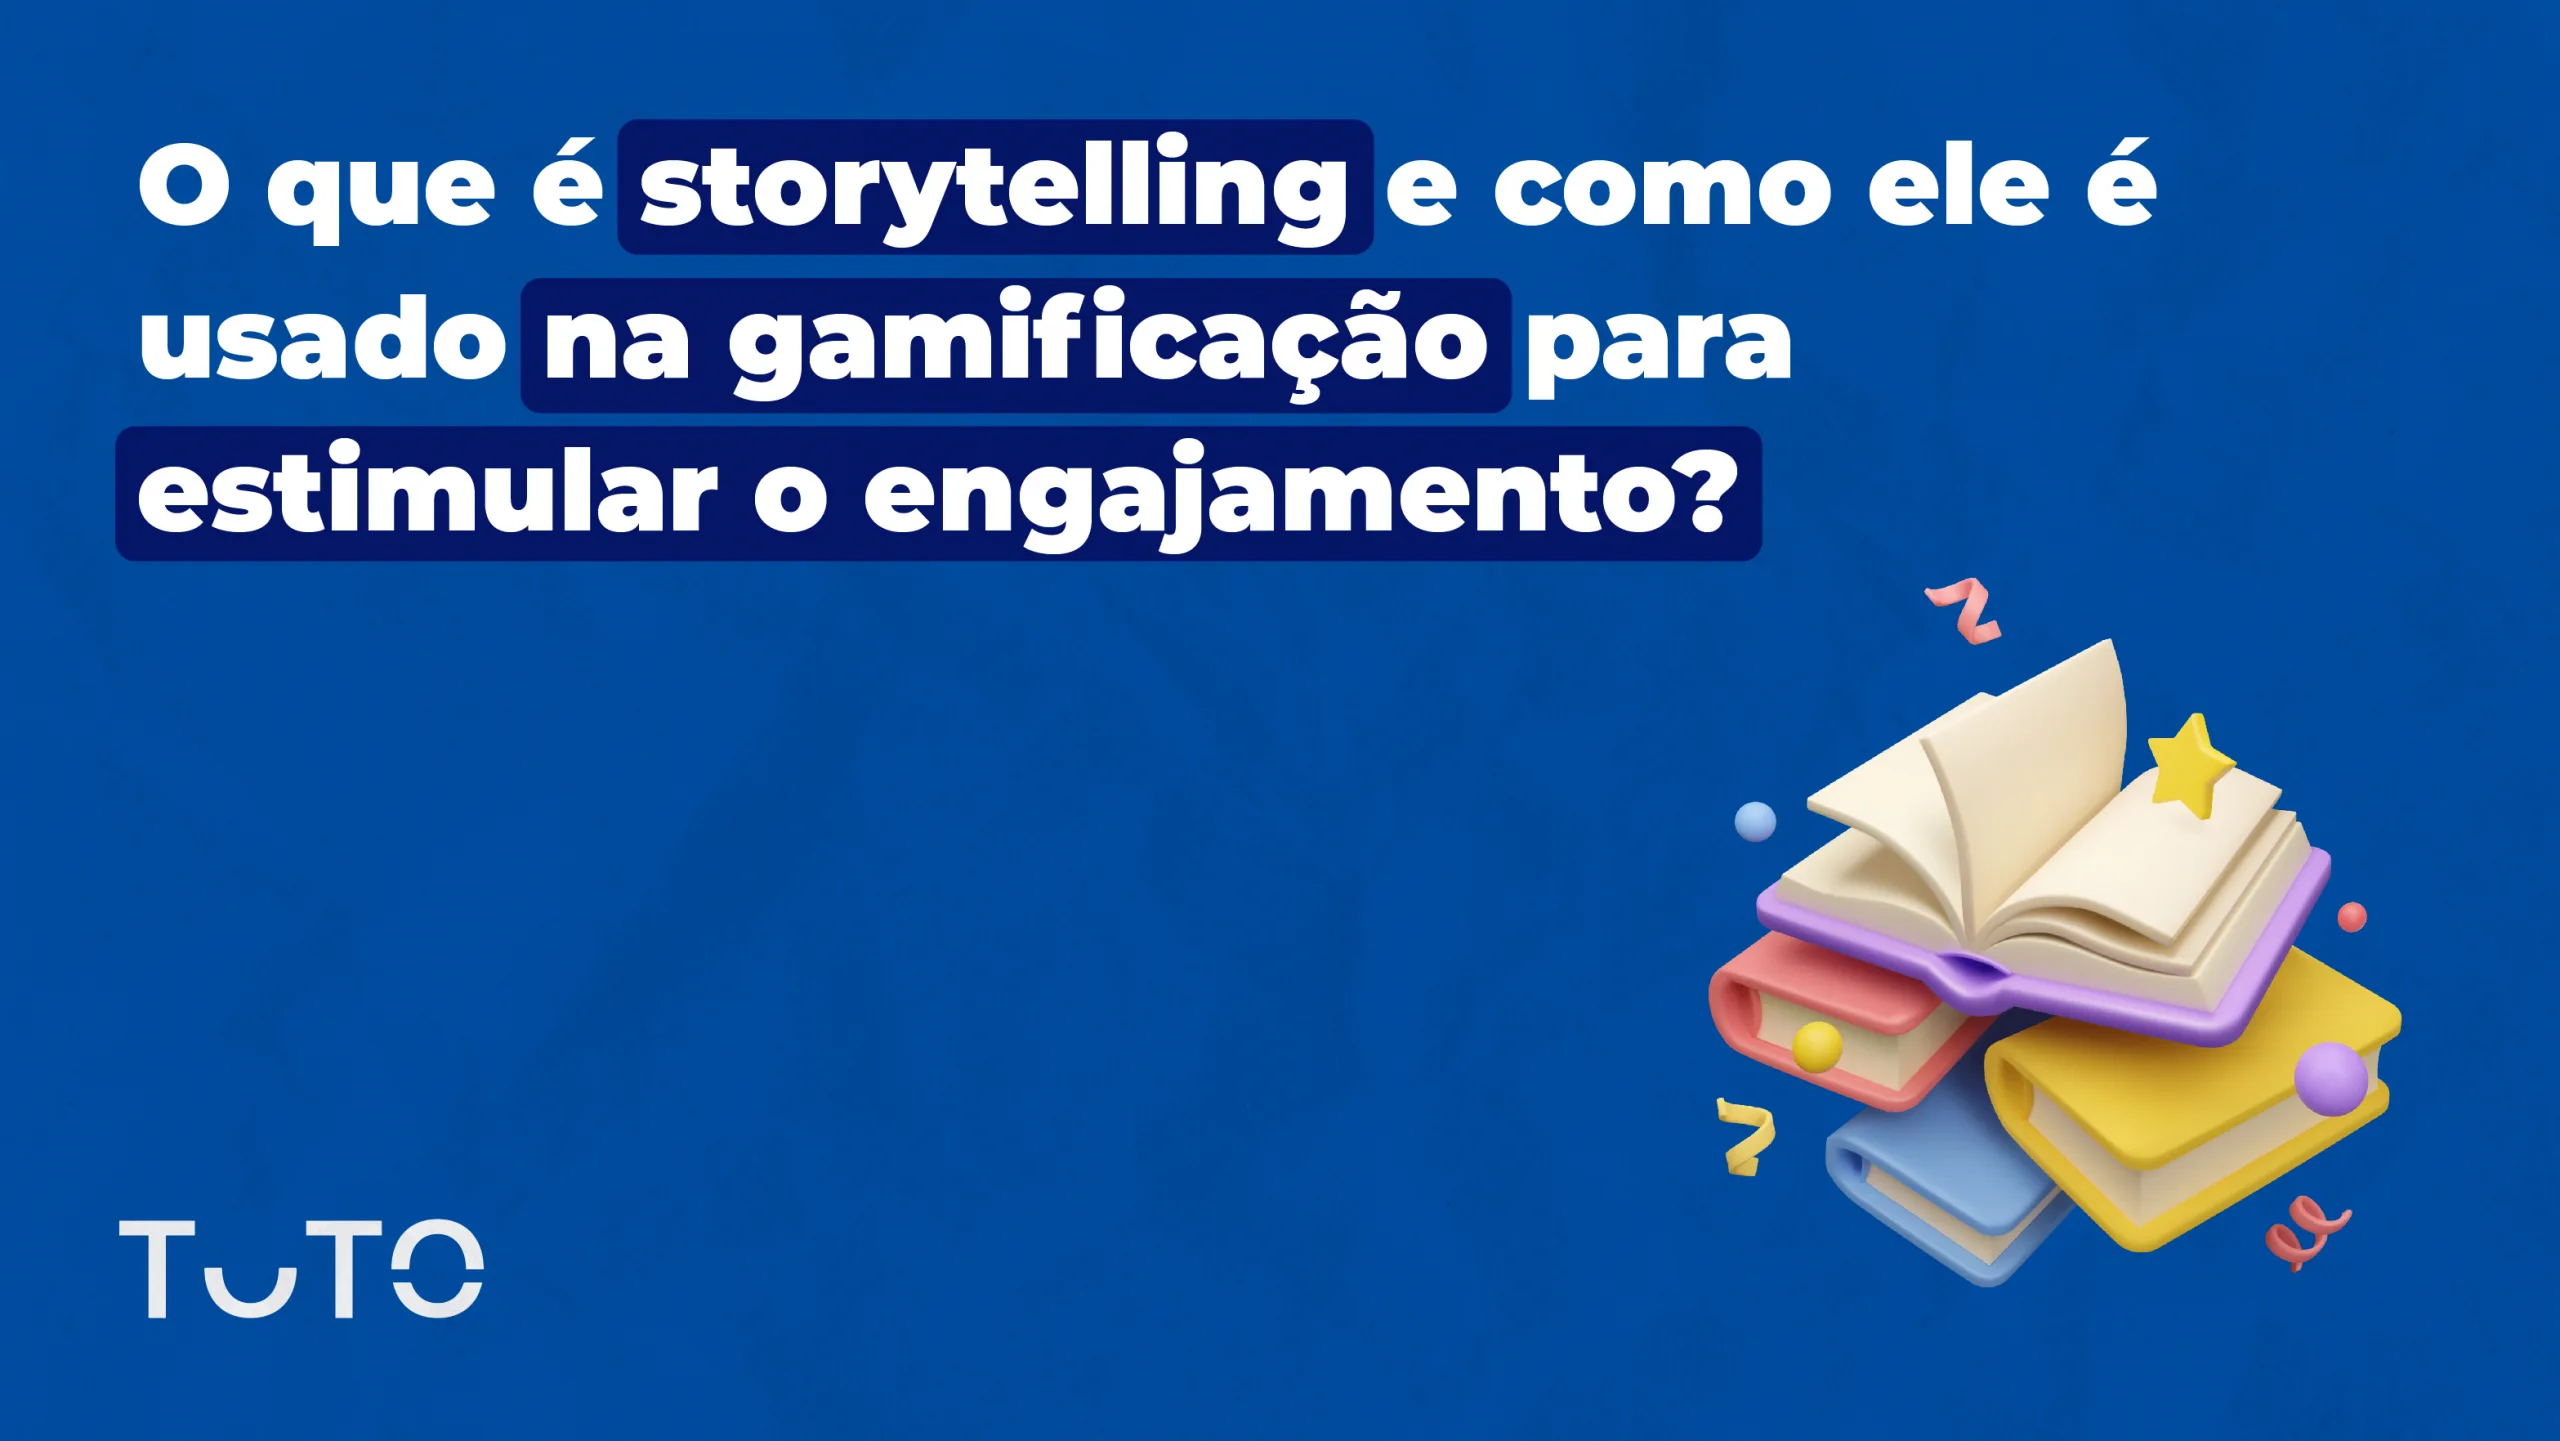 O que é storytelling e como ele é usado na gamificação para estimular o engajamento?